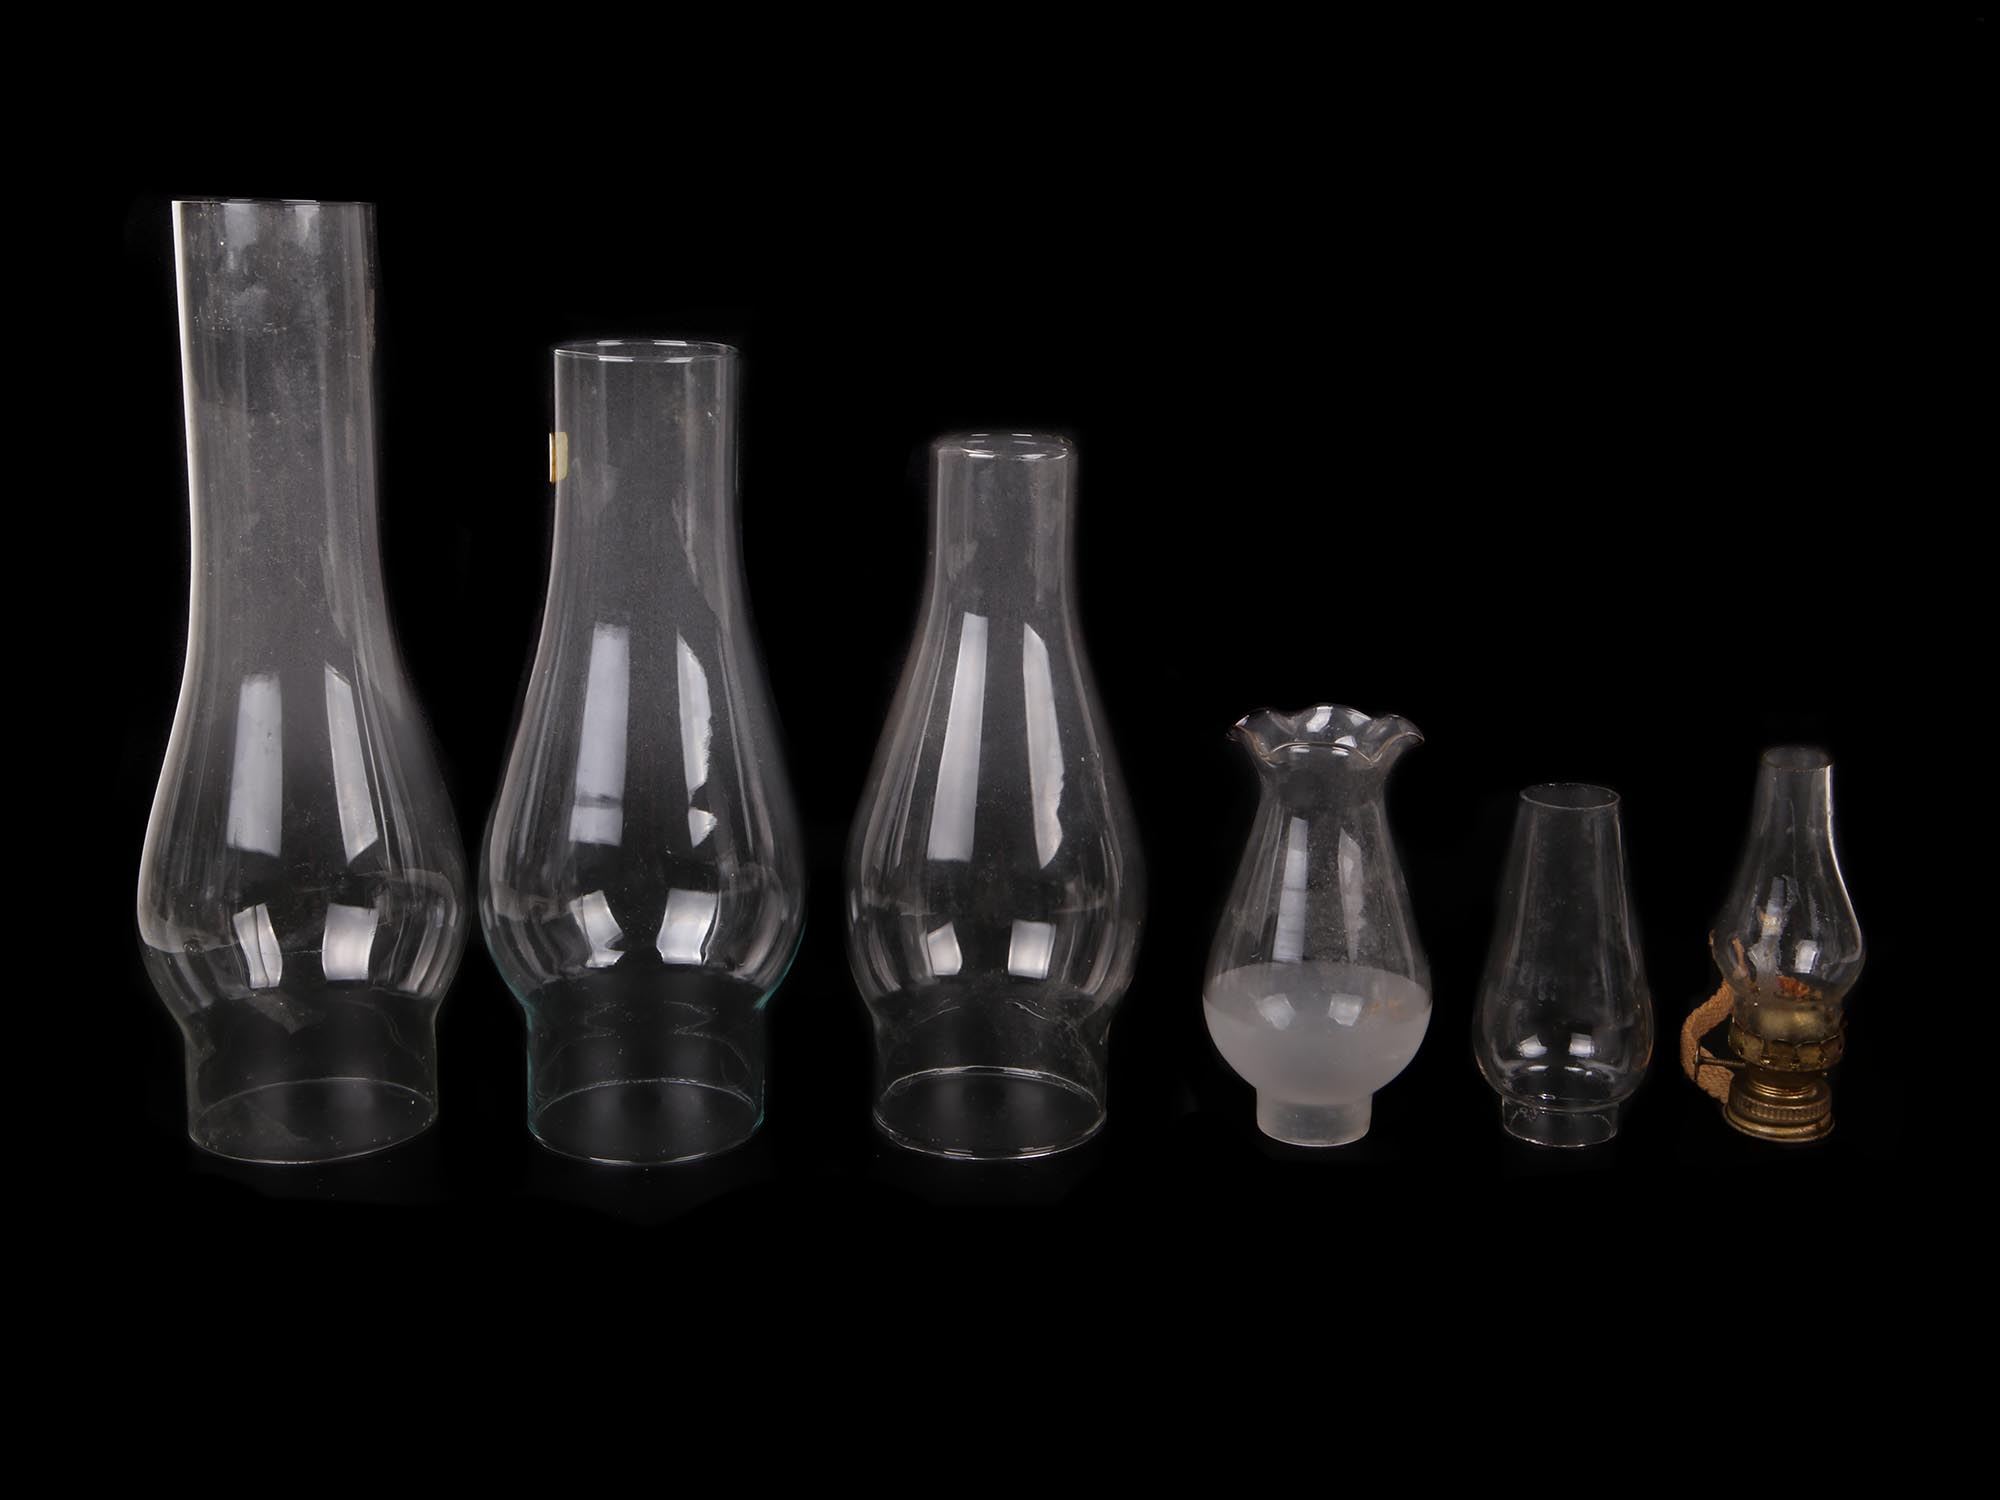 ANTIQUE GLASS LAMP SHADES FOR OIL KEROSENE LAMPS PIC-3